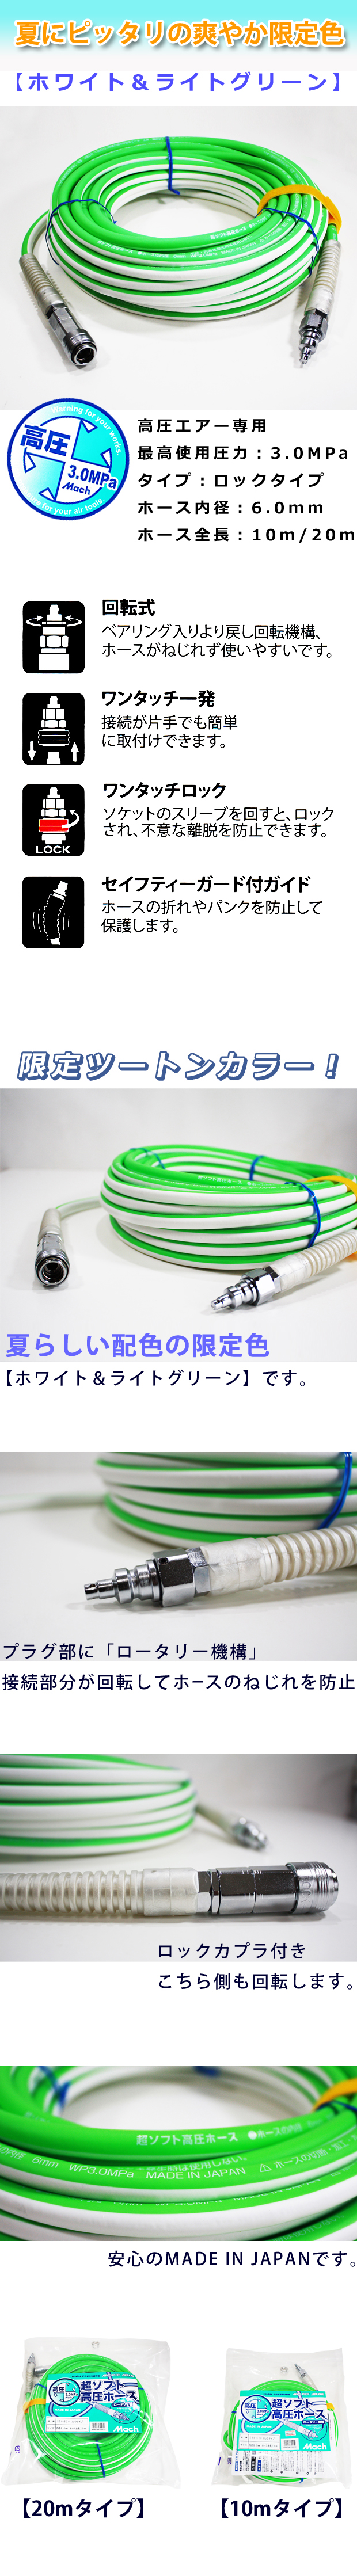 【限定色】マッハ 超ソフト高圧ホース ホワイト ＆ライトグリーン S20-610/620